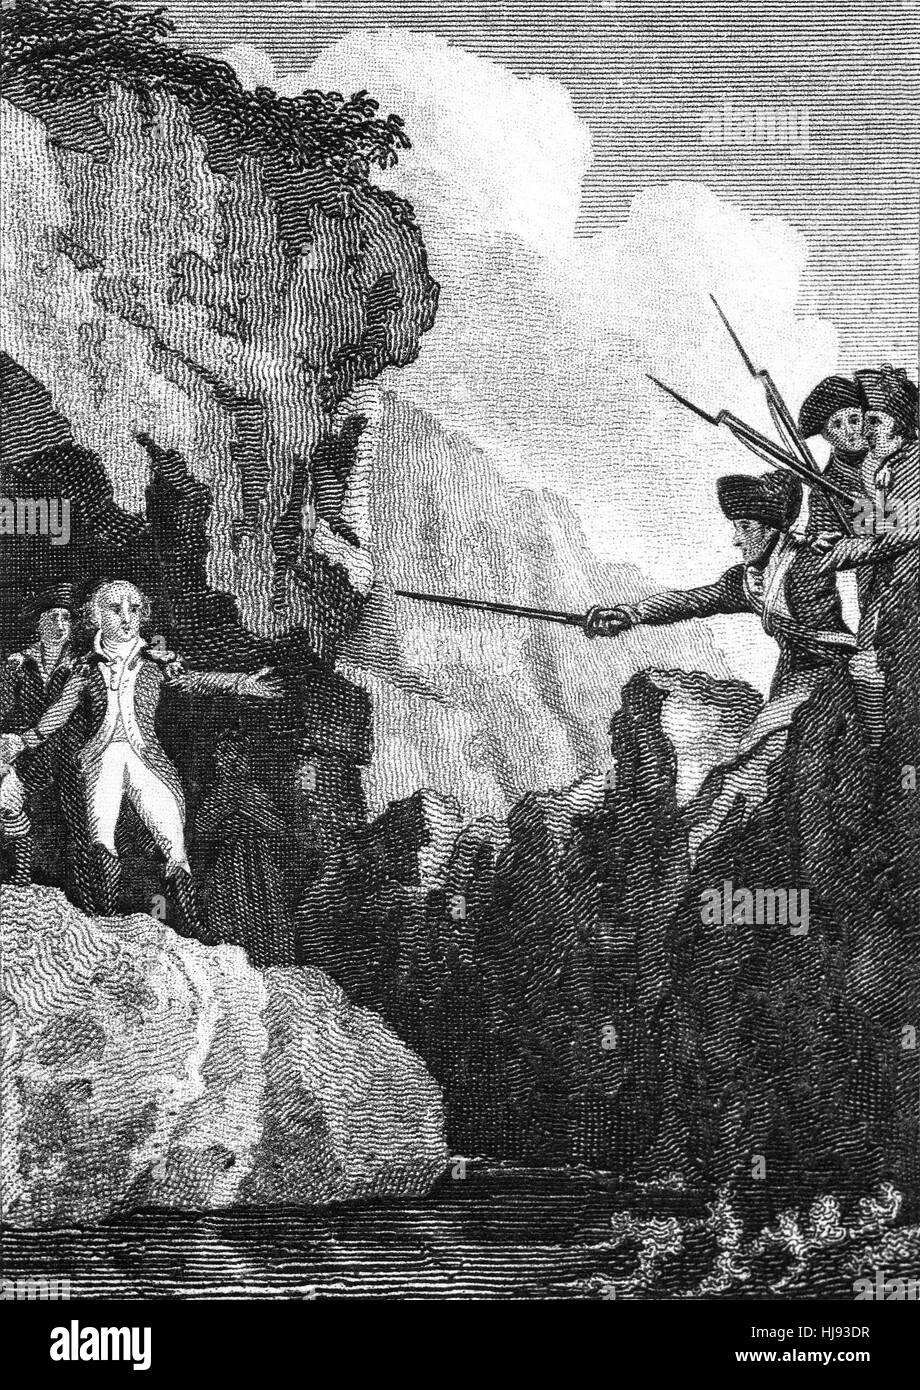 John Henry Bagenal Colclough et Harvey, les dirigeants de la rébellion irlandaise de 1798, s'est réfugié dans une grotte à l'Îles Saltee d'où ils avaient l'intention d'échapper à la France républicaine. Ils ont été trahis, arrêté et emmené à la ville de Wexford. Là, ils ont été pendus sur le pont le 28 juin 1798. Banque D'Images